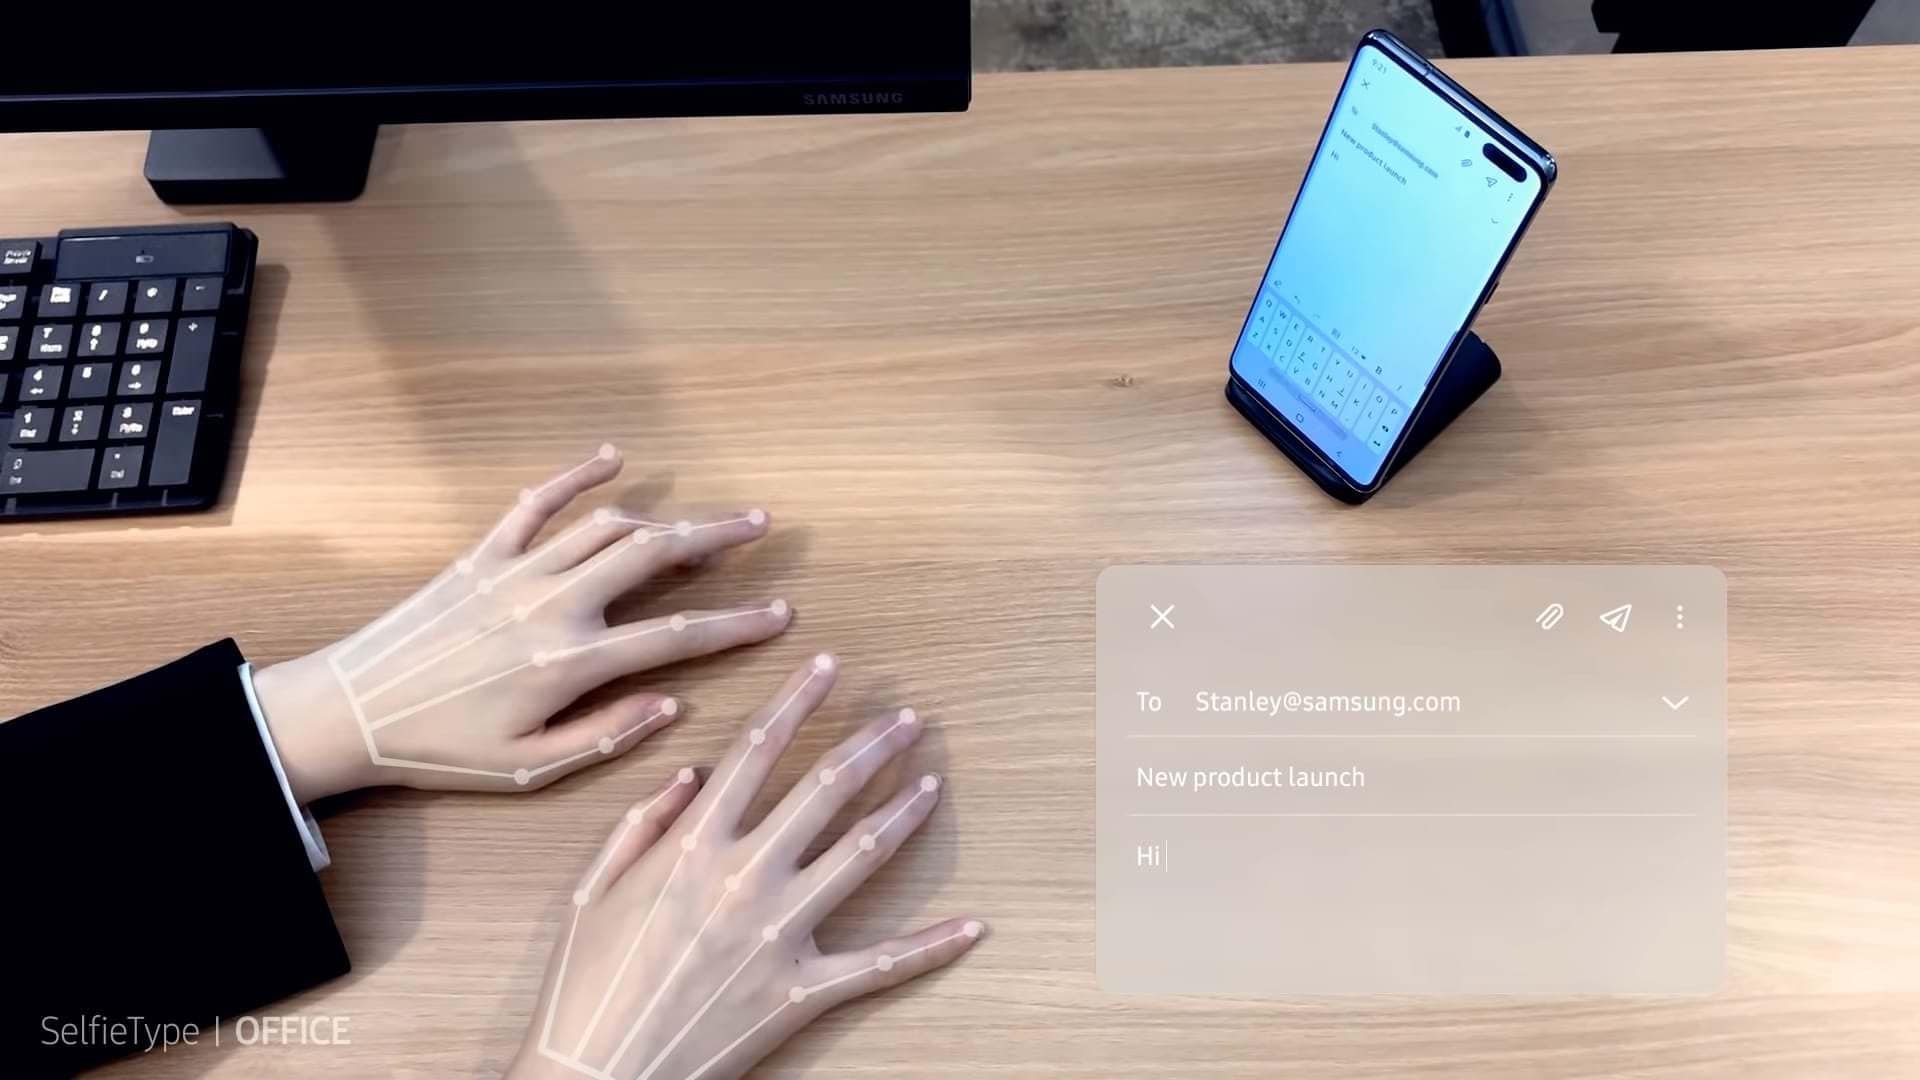 Samsung โชว์ SelfieType คีย์บอร์ดล่องหน ใช้เพียงกล้องหน้าจับการเคลื่อนไหวมือ 1